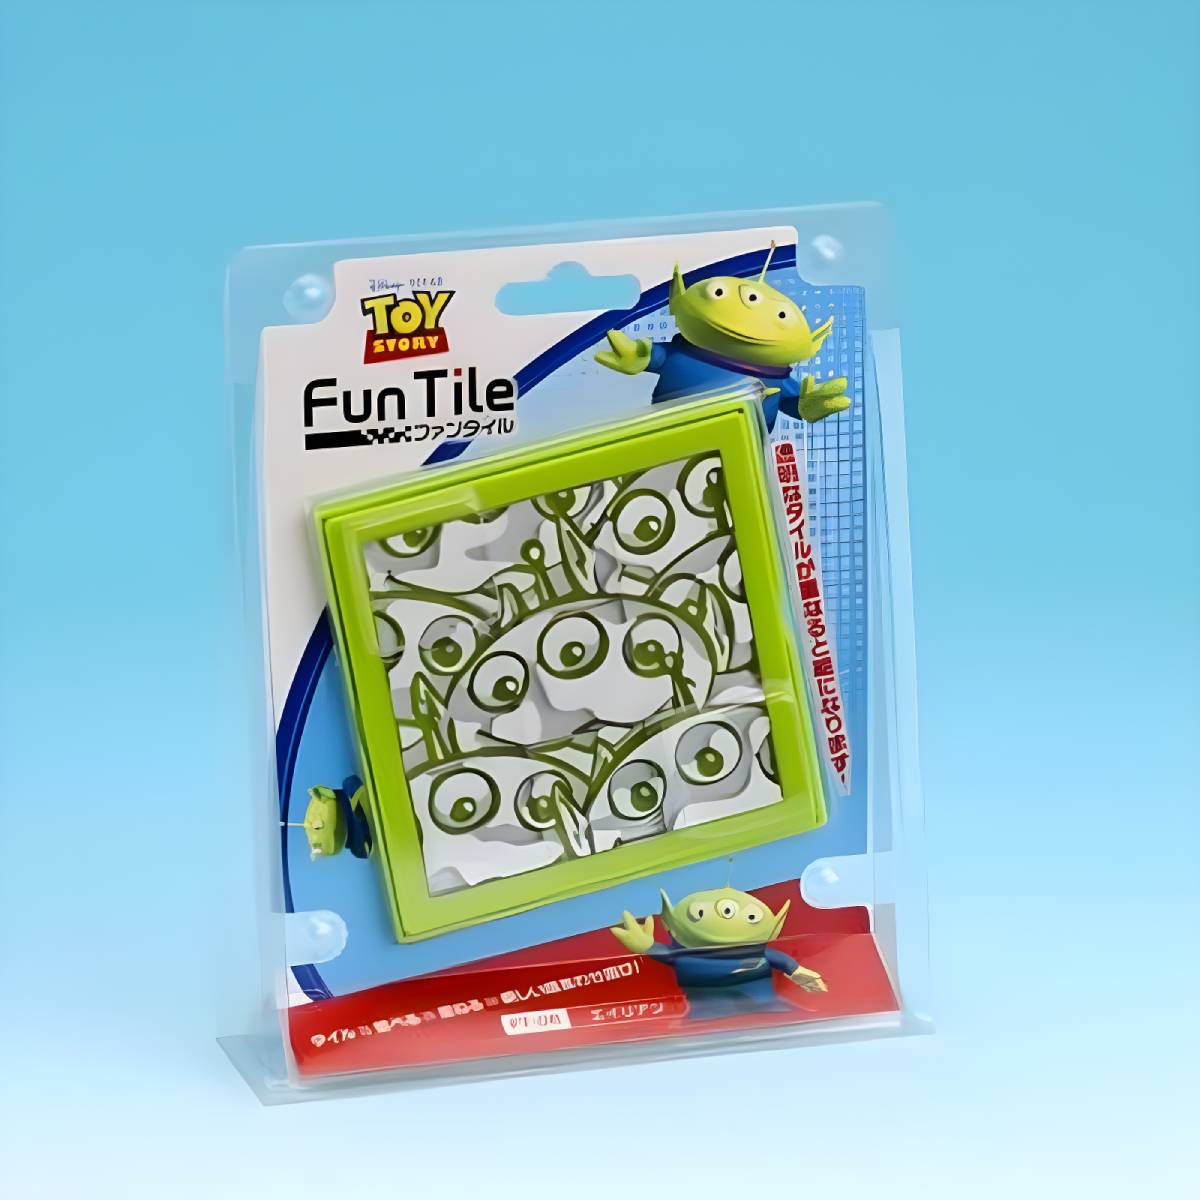 Toy - Fun Tile Disney